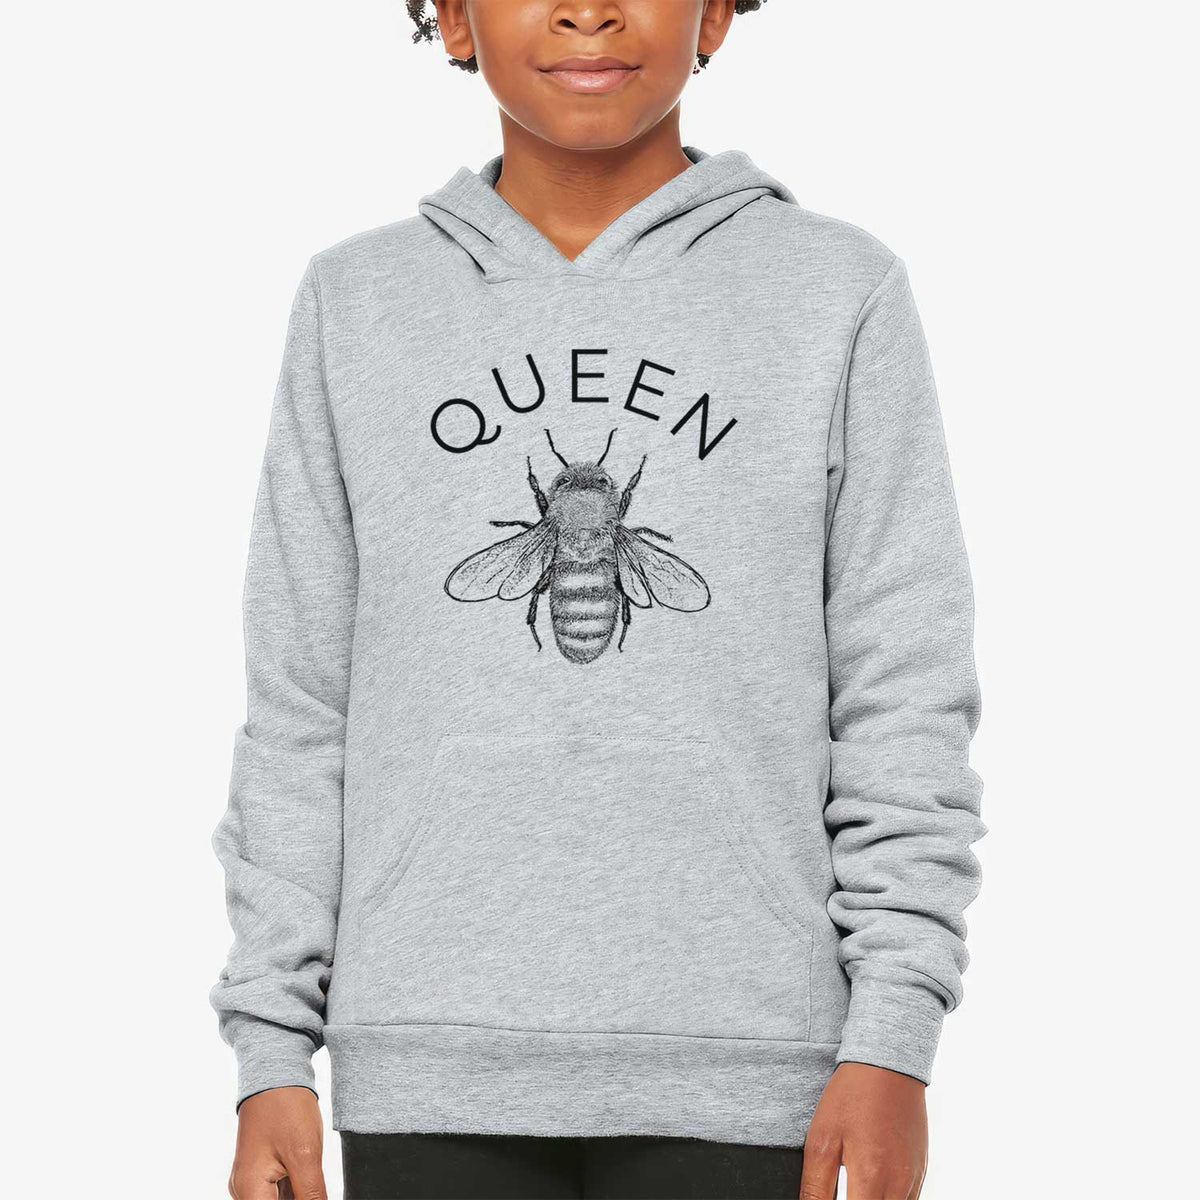 Queen Bee - Youth Hoodie Sweatshirt